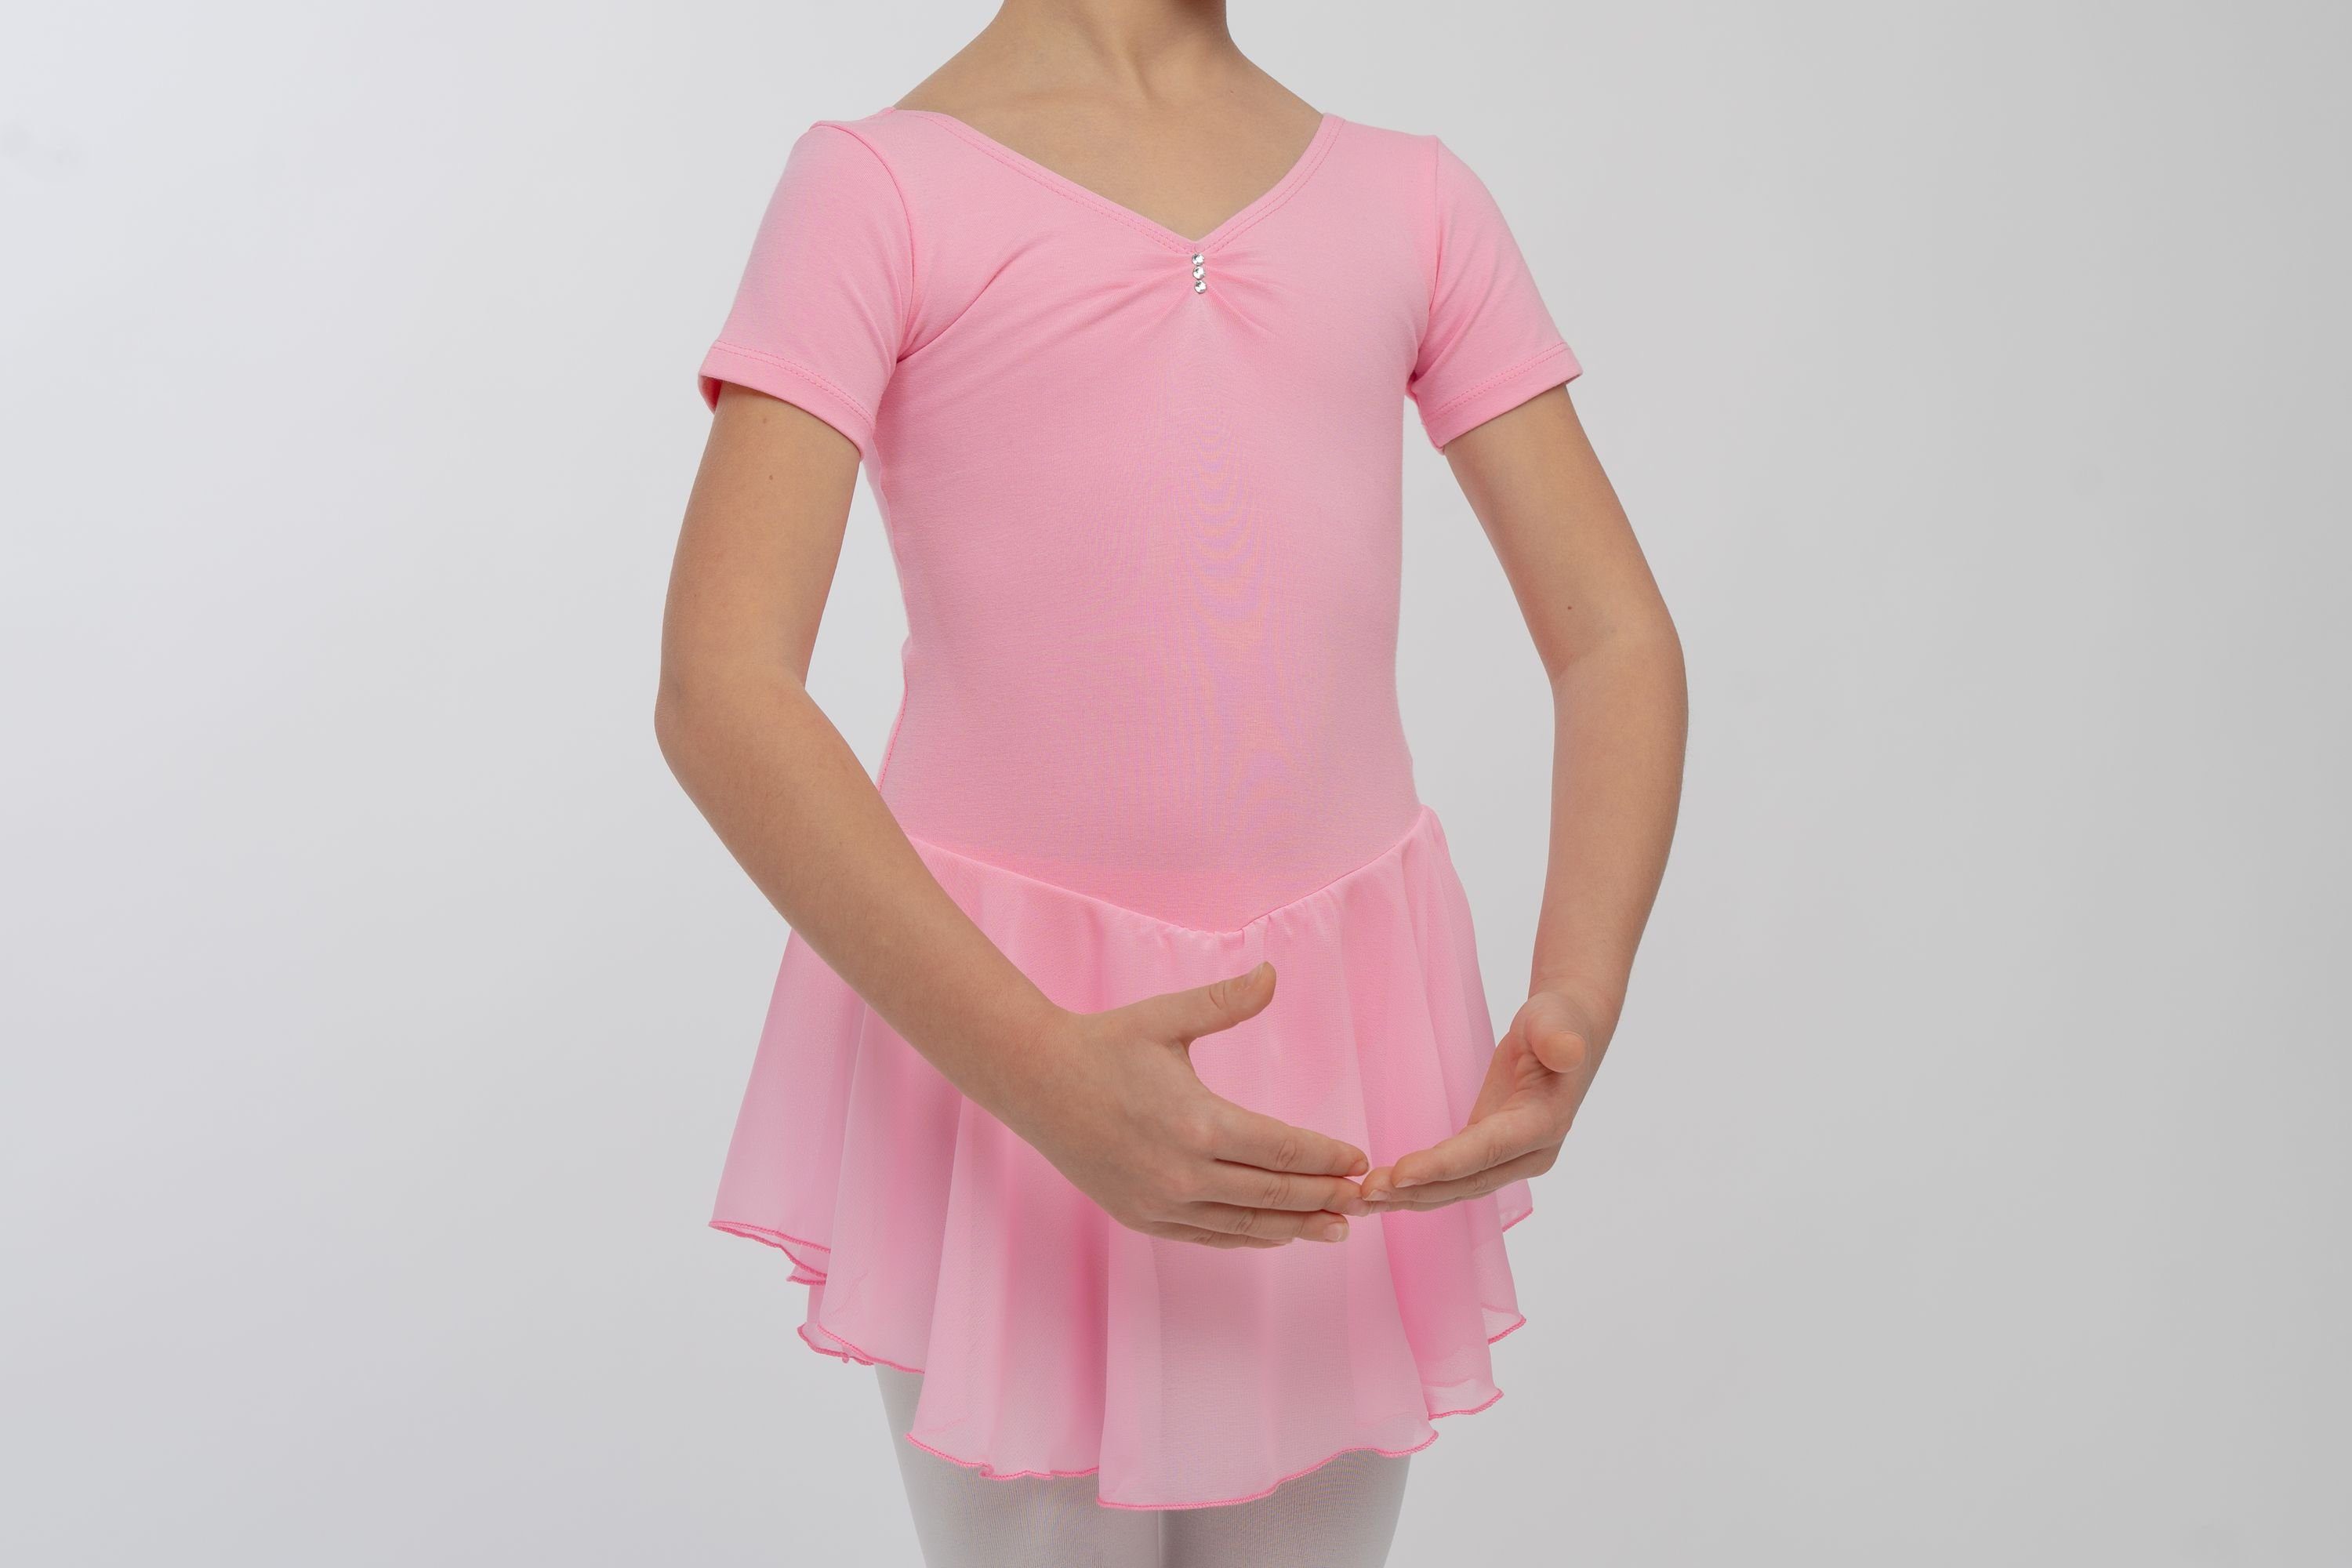 Betty Chiffon mit rosa Mädchen Glitzersteinen Chiffonkleid tanzmuster Ballettkleid Ballettbody mit Röckchen